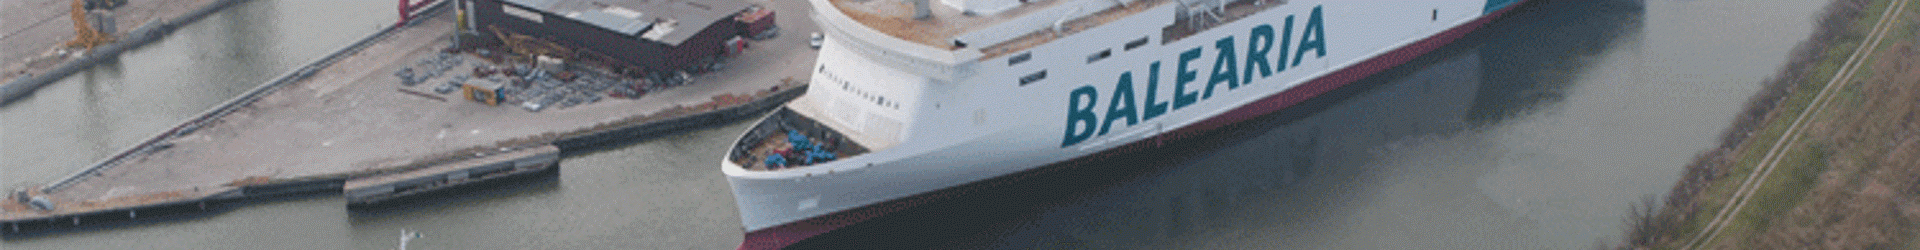 Hypatia de Alejandría y Marie Curie, los nuevos ferries de Balearia contarán con AMOS